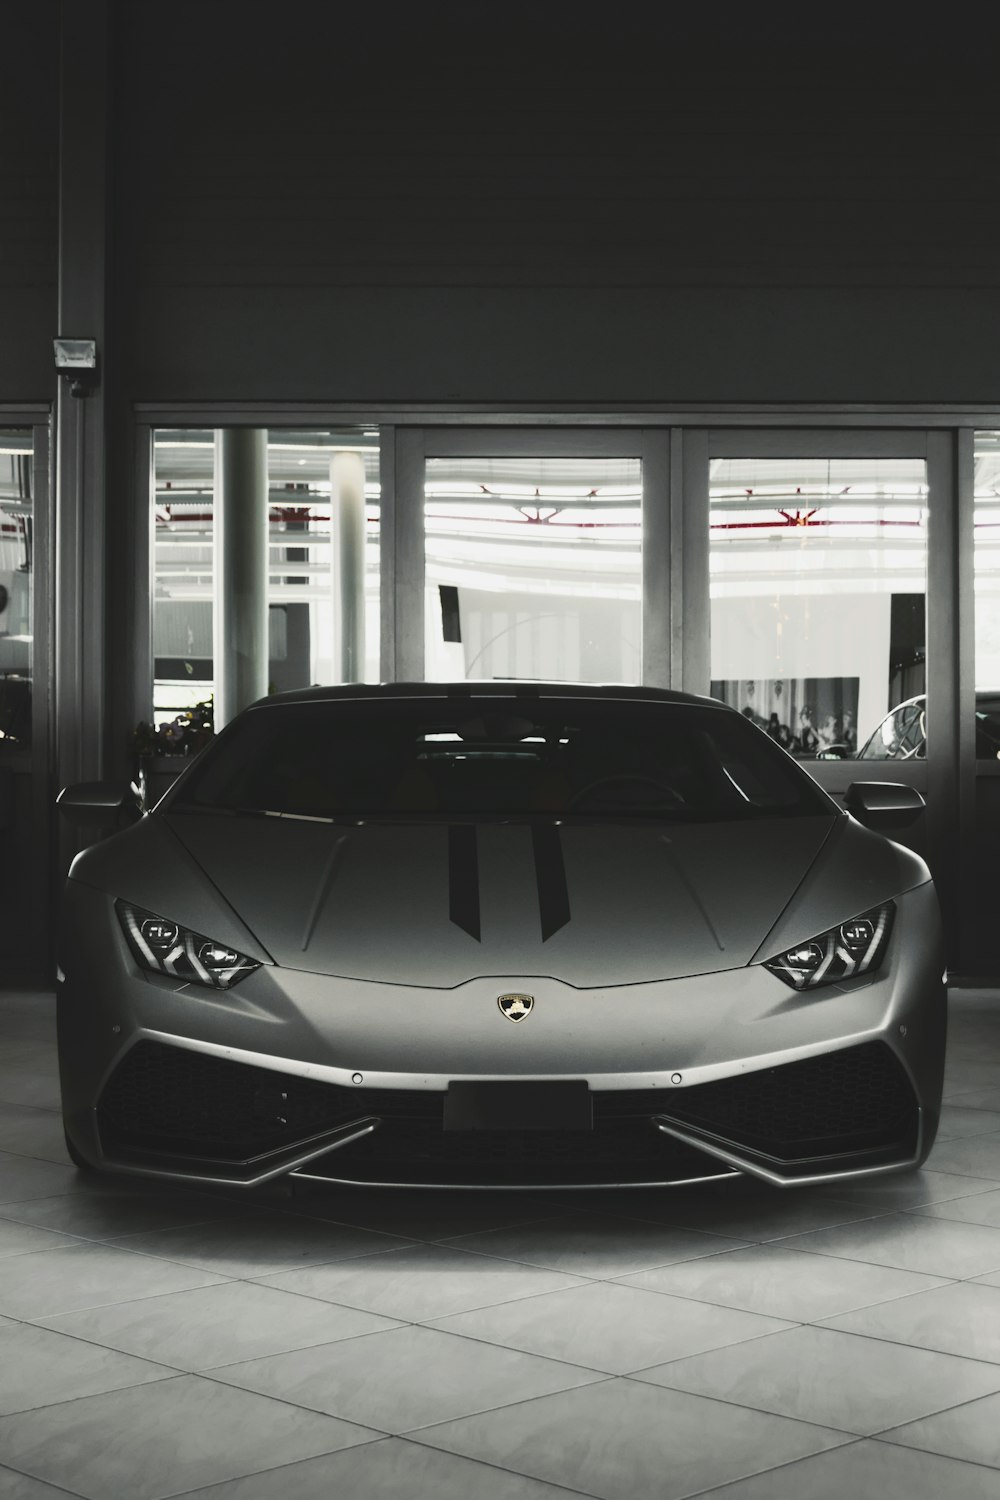 Lamborghini Wallpapers: Free HD Download 500+ HQ | Unsplash